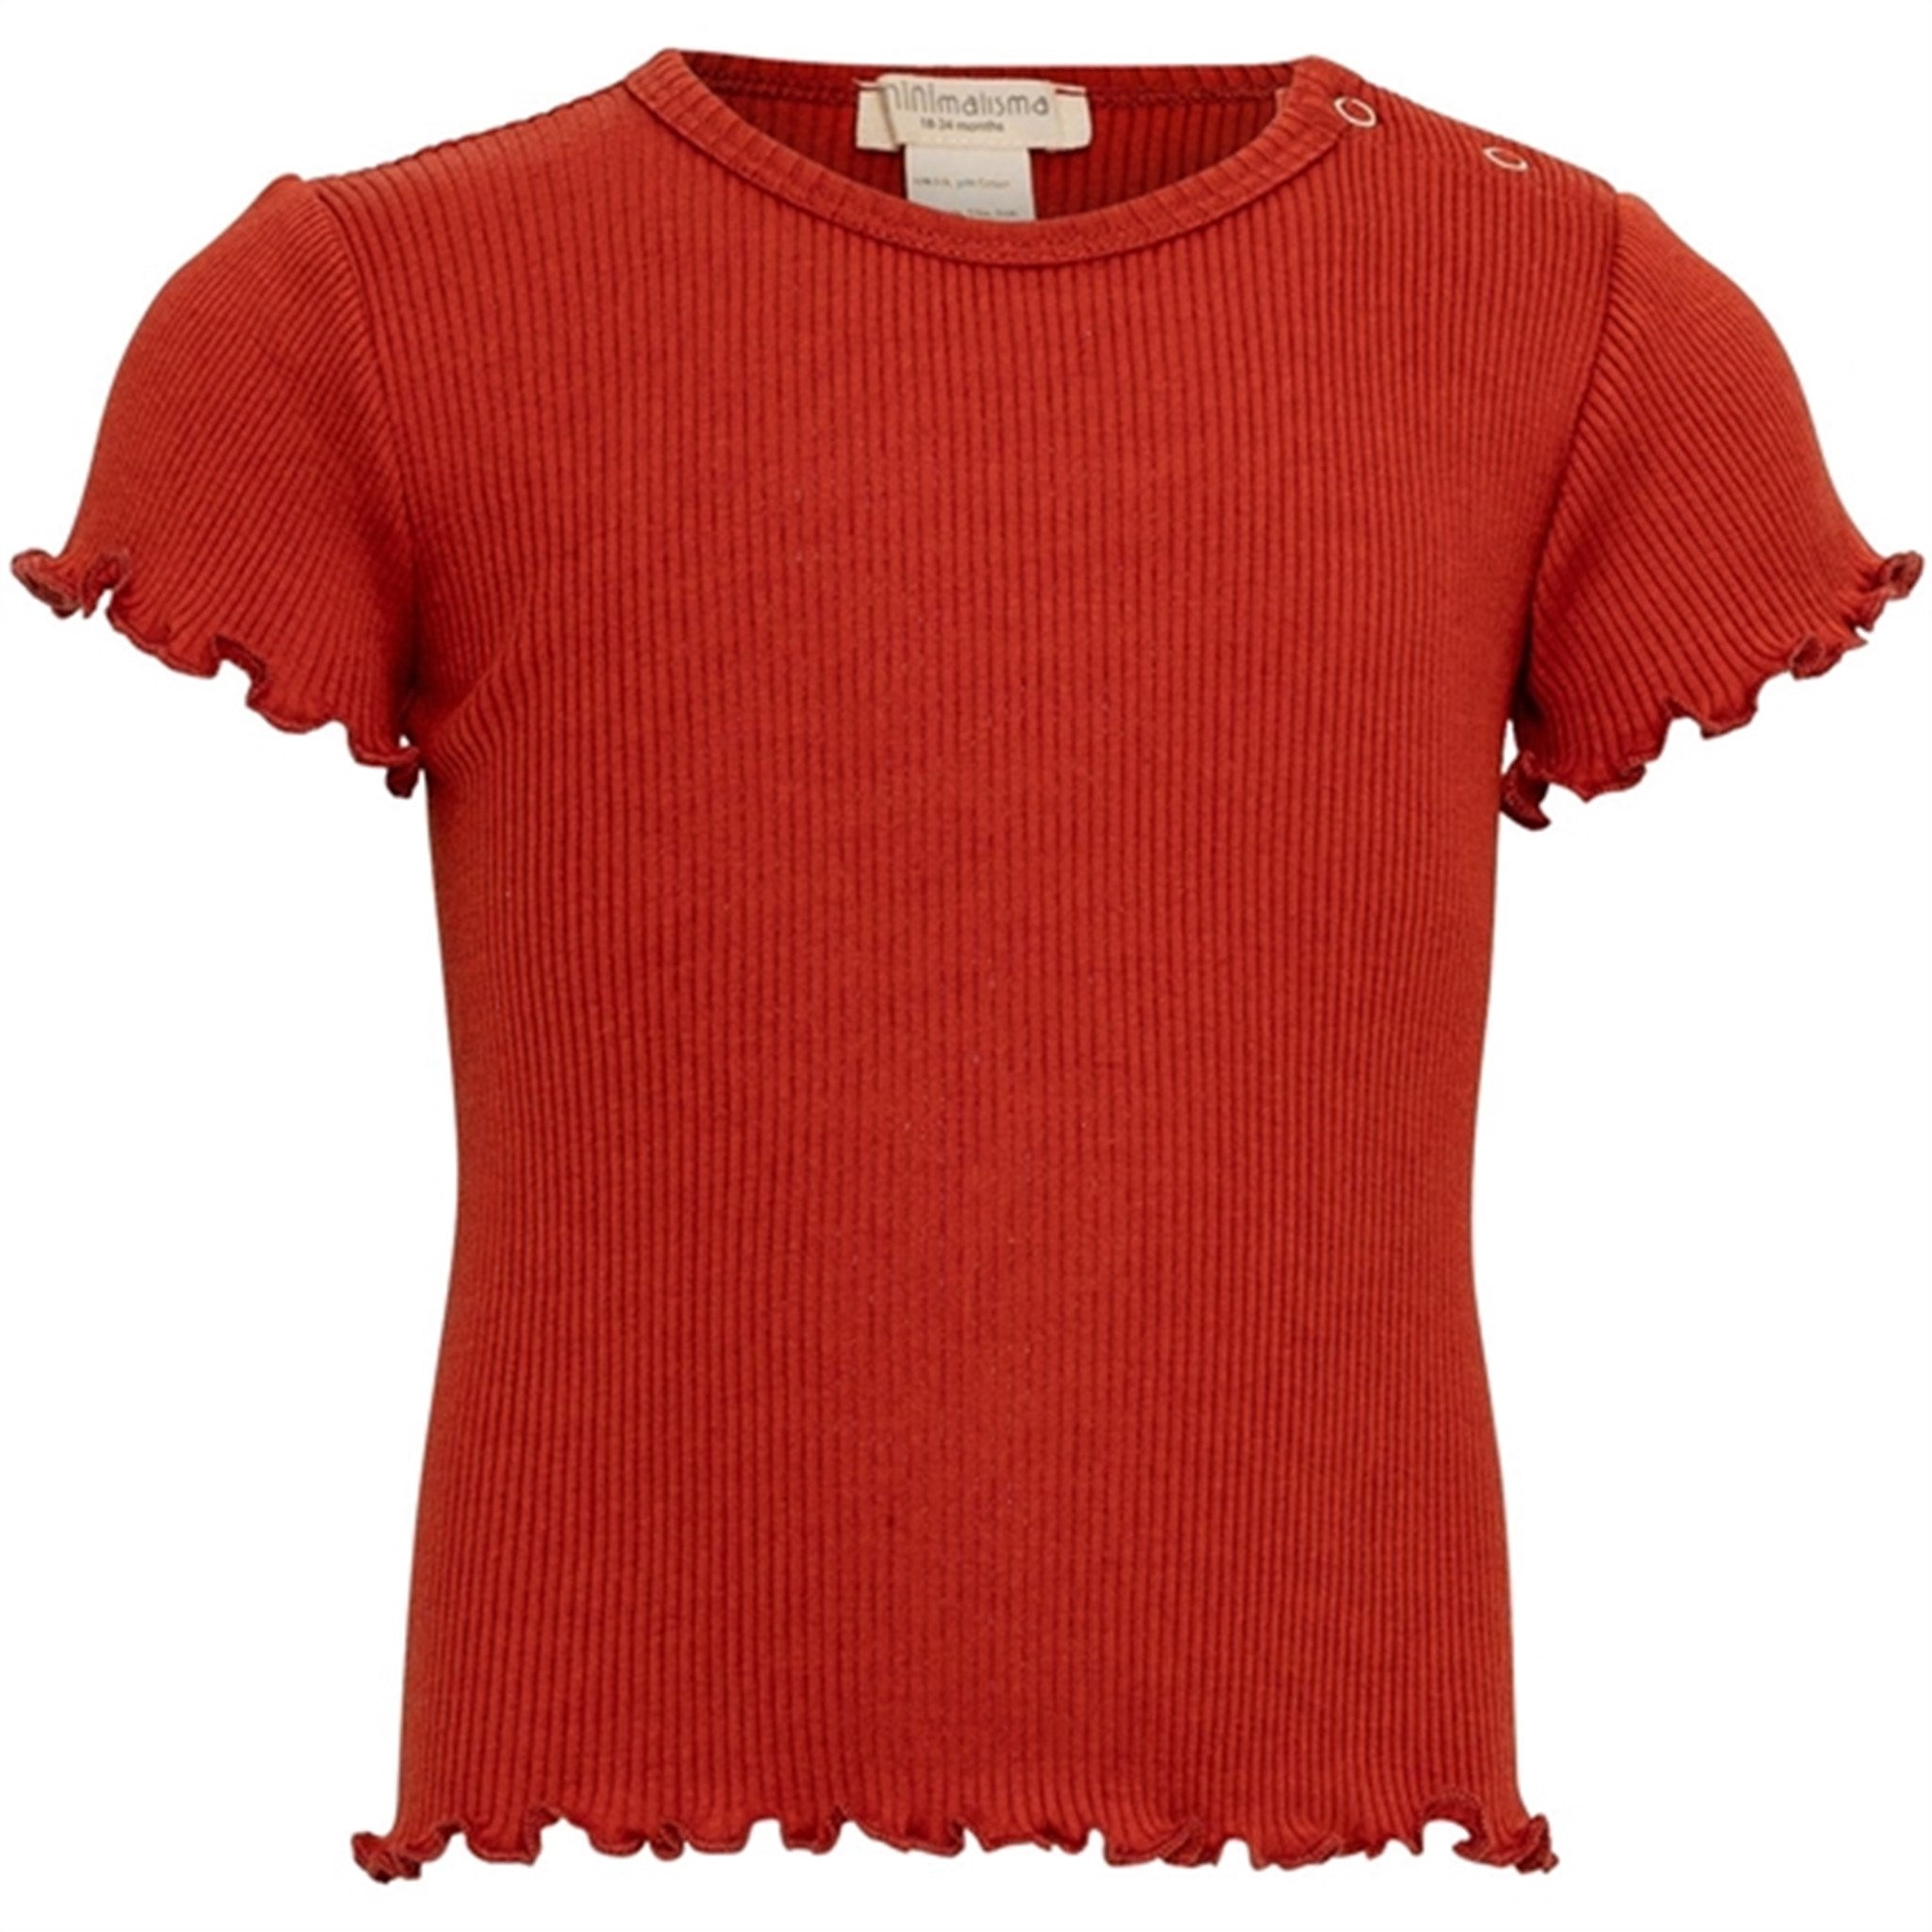 Minimalisma Bimse T-shirt Poppy Red - Str. 12-18 mdr